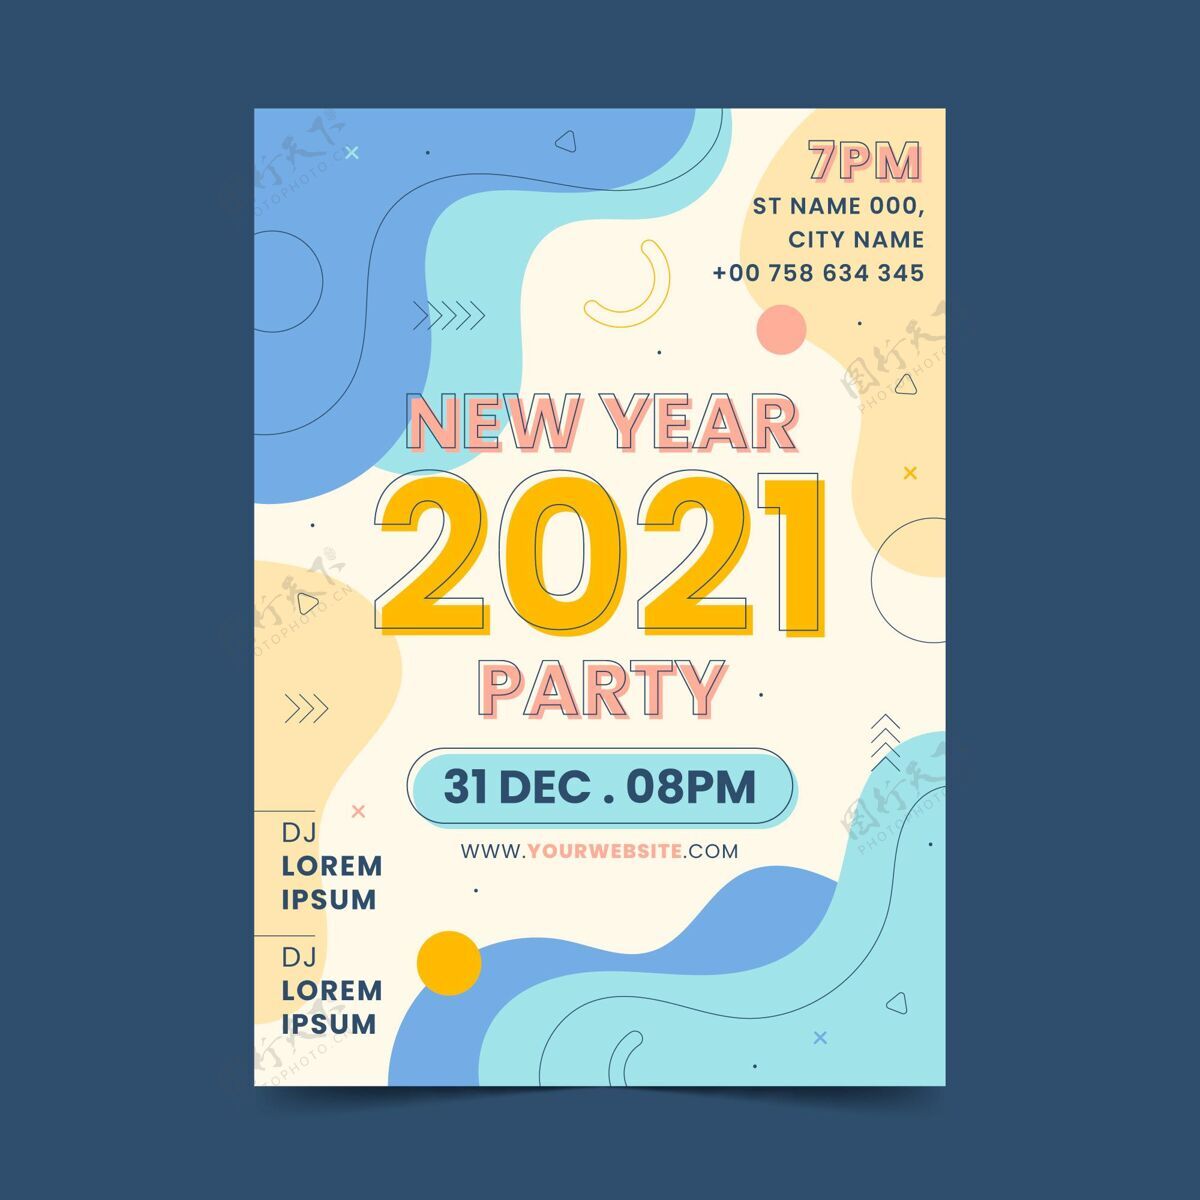 夏娃2021年新年派对海报模板摘要准备印刷新年聚会